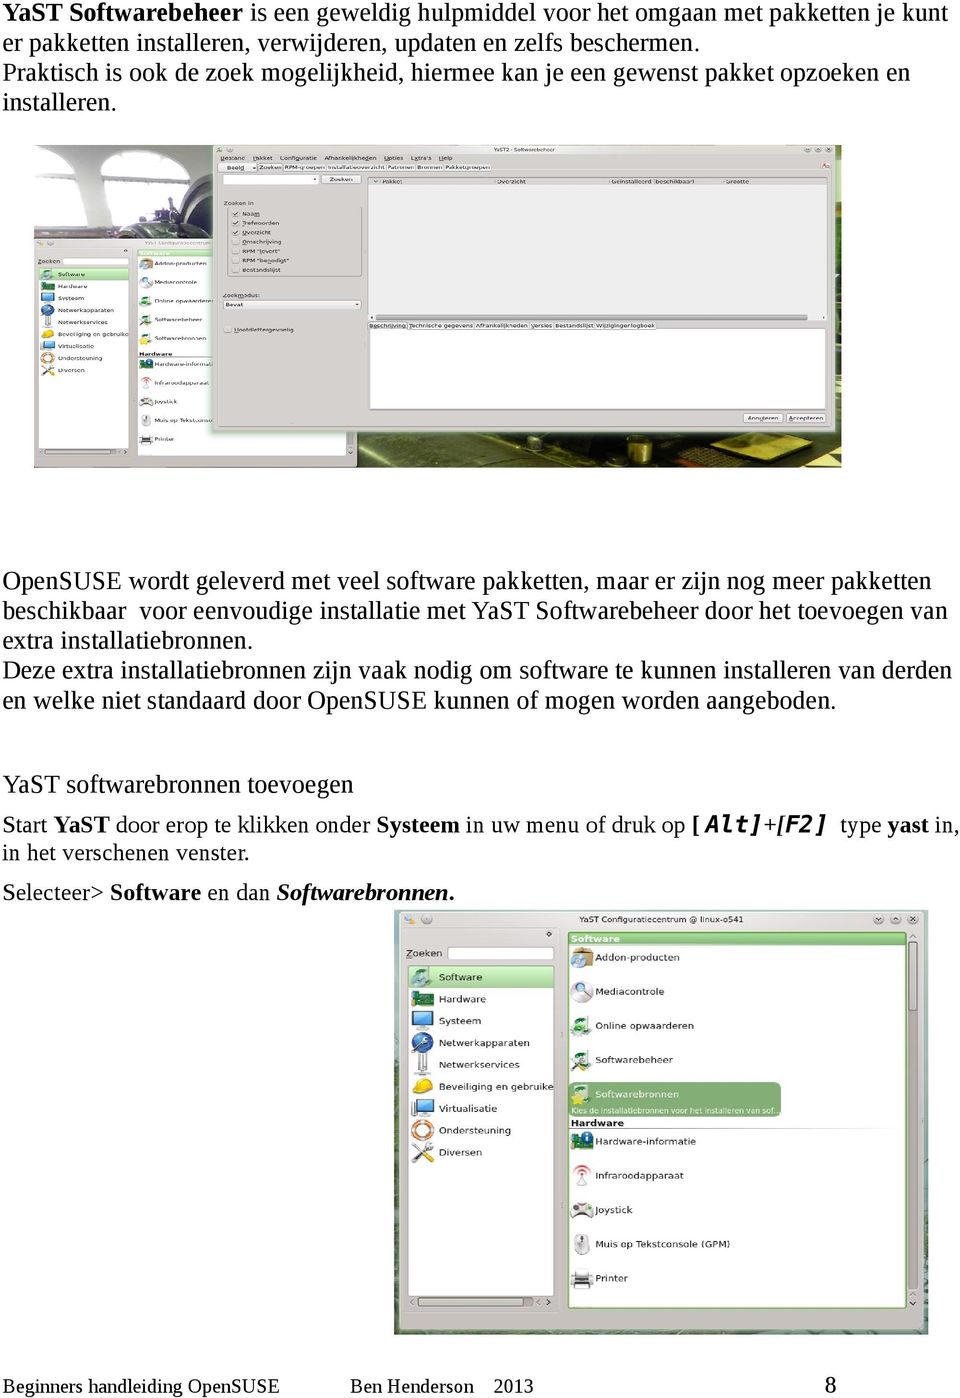 OpenSUSE wordt geleverd met veel software pakketten, maar er zijn nog meer pakketten beschikbaar voor eenvoudige installatie met YaST Softwarebeheer door het toevoegen van extra installatiebronnen.